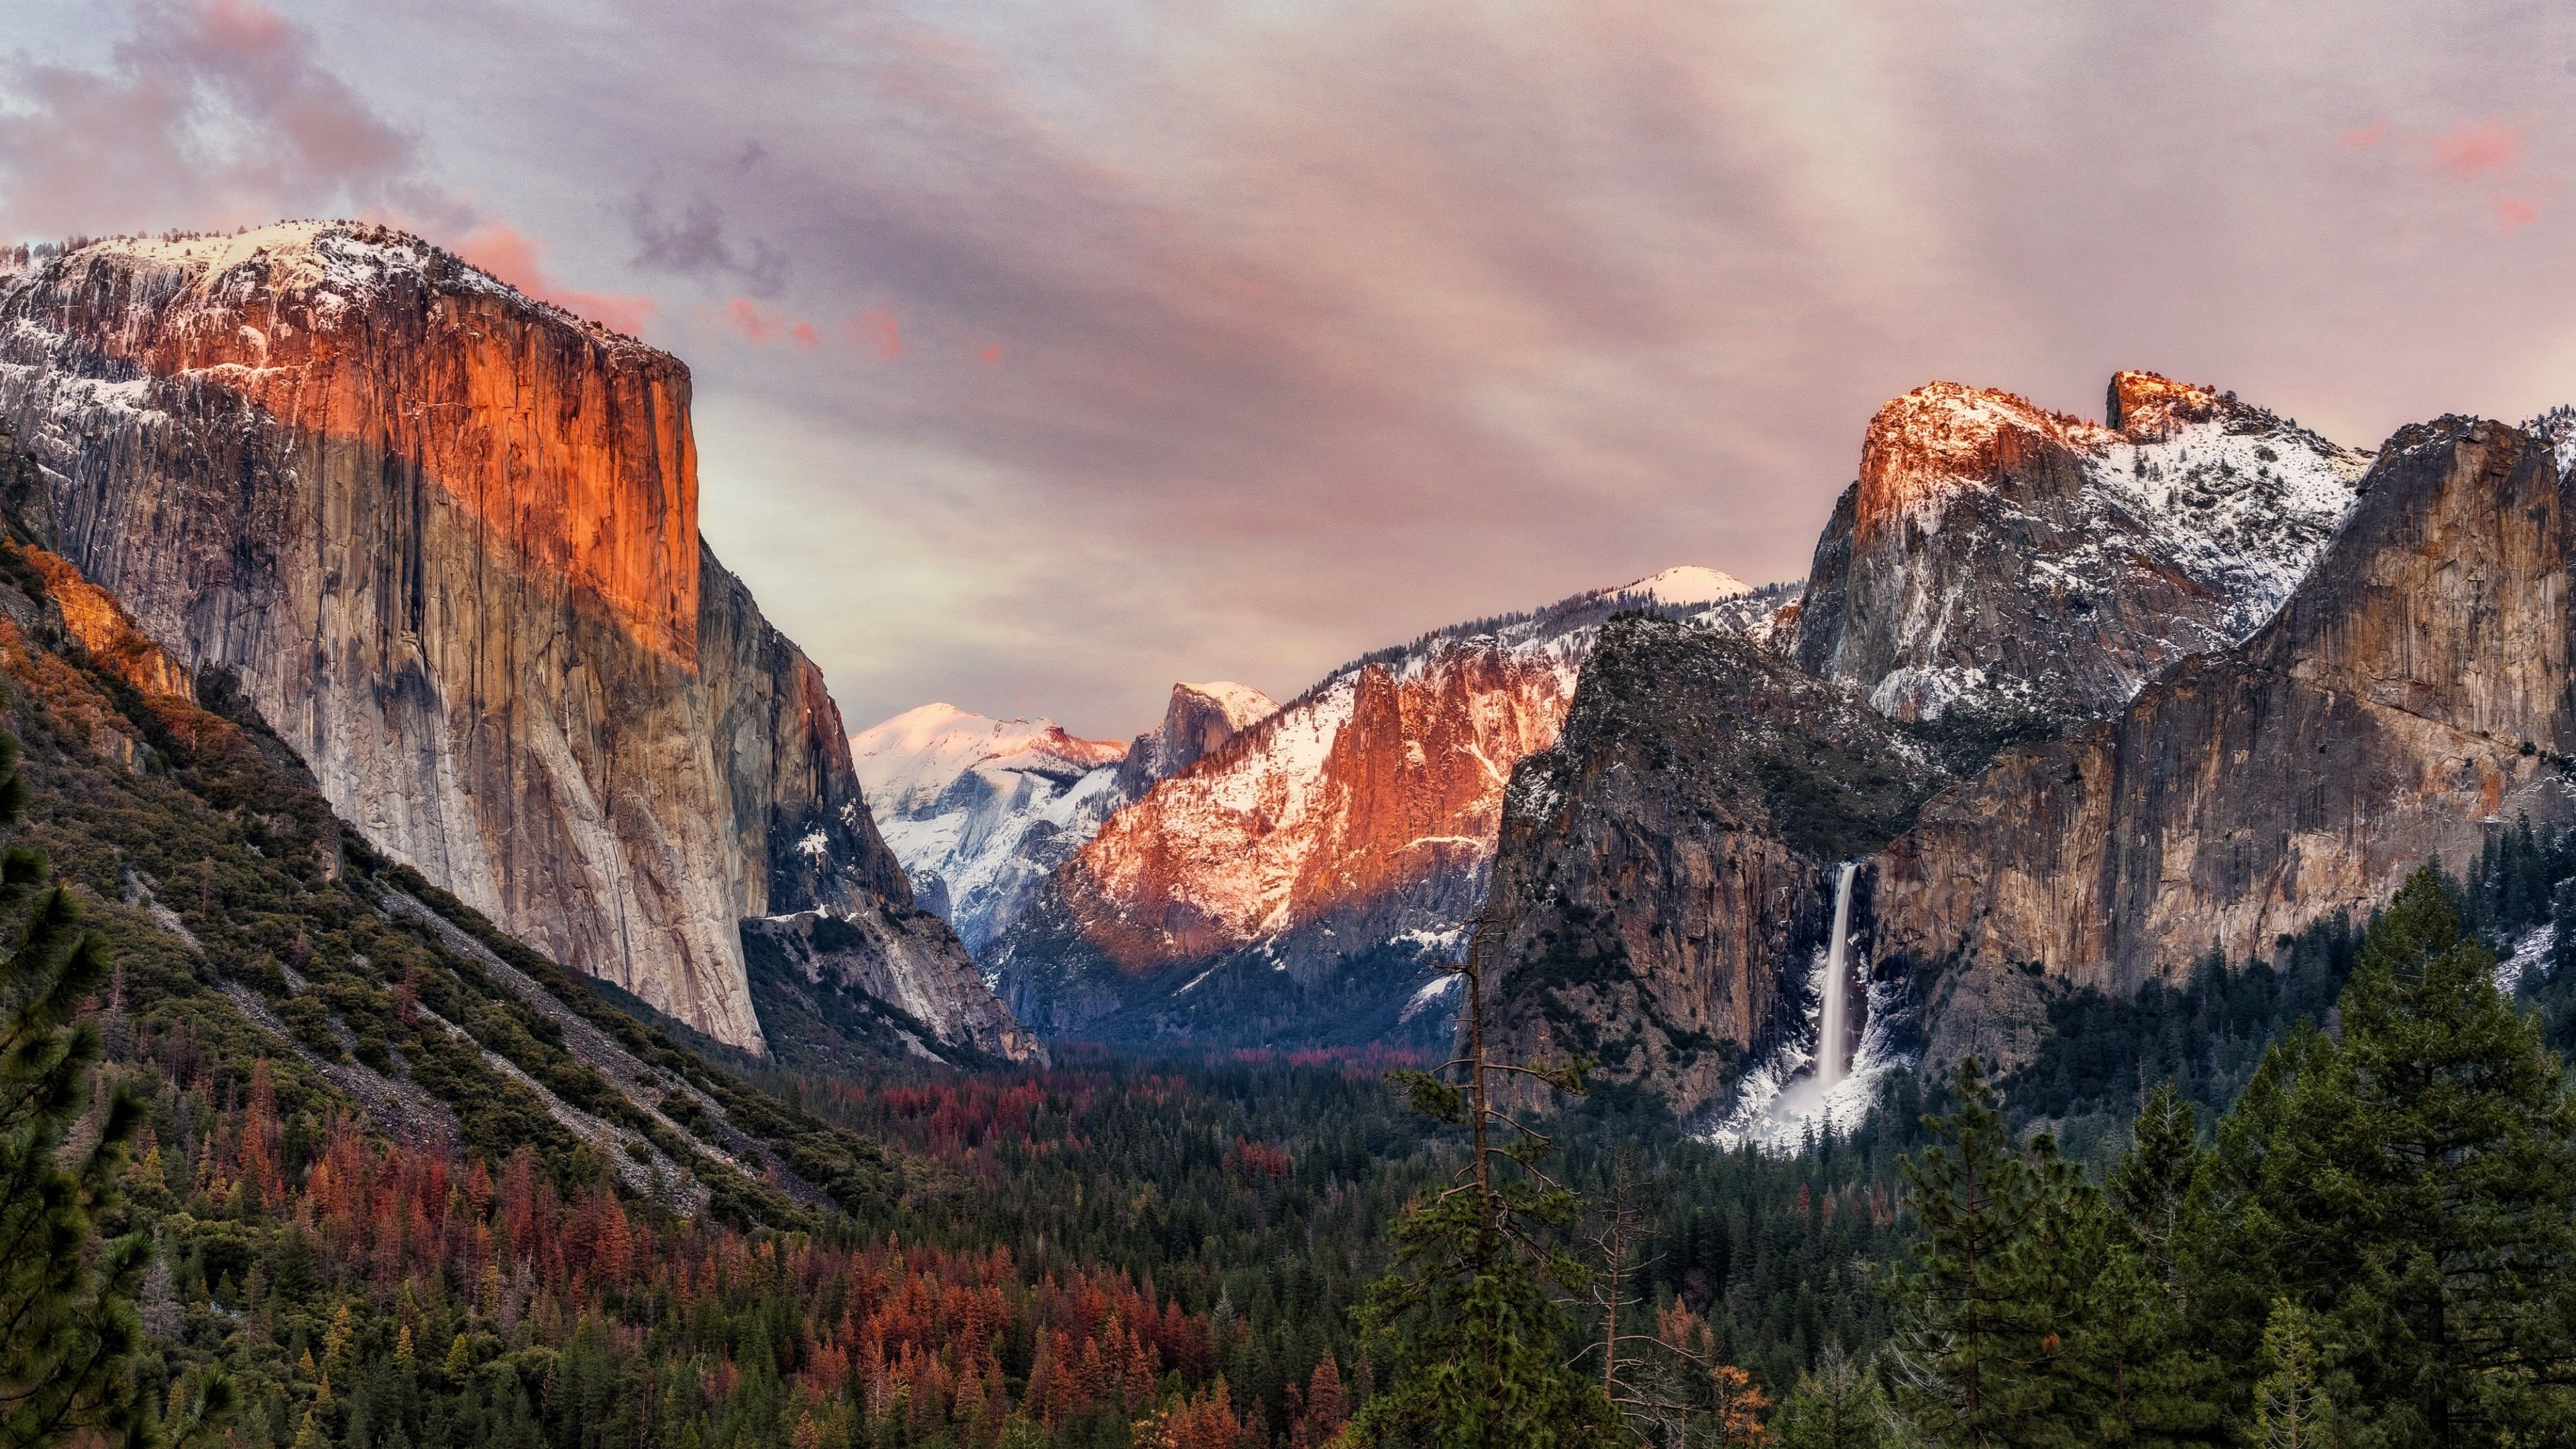 Cùng chiêm ngưỡng hình nền Yosemite National Park tràn đầy sức sống và màu sắc tuyệt đẹp. Dòng suối trong xanh nước trong, con thú hoang dã bậc nhất, tất cả đều tạo nên một hình ảnh hoàn hảo cho máy tính của bạn.